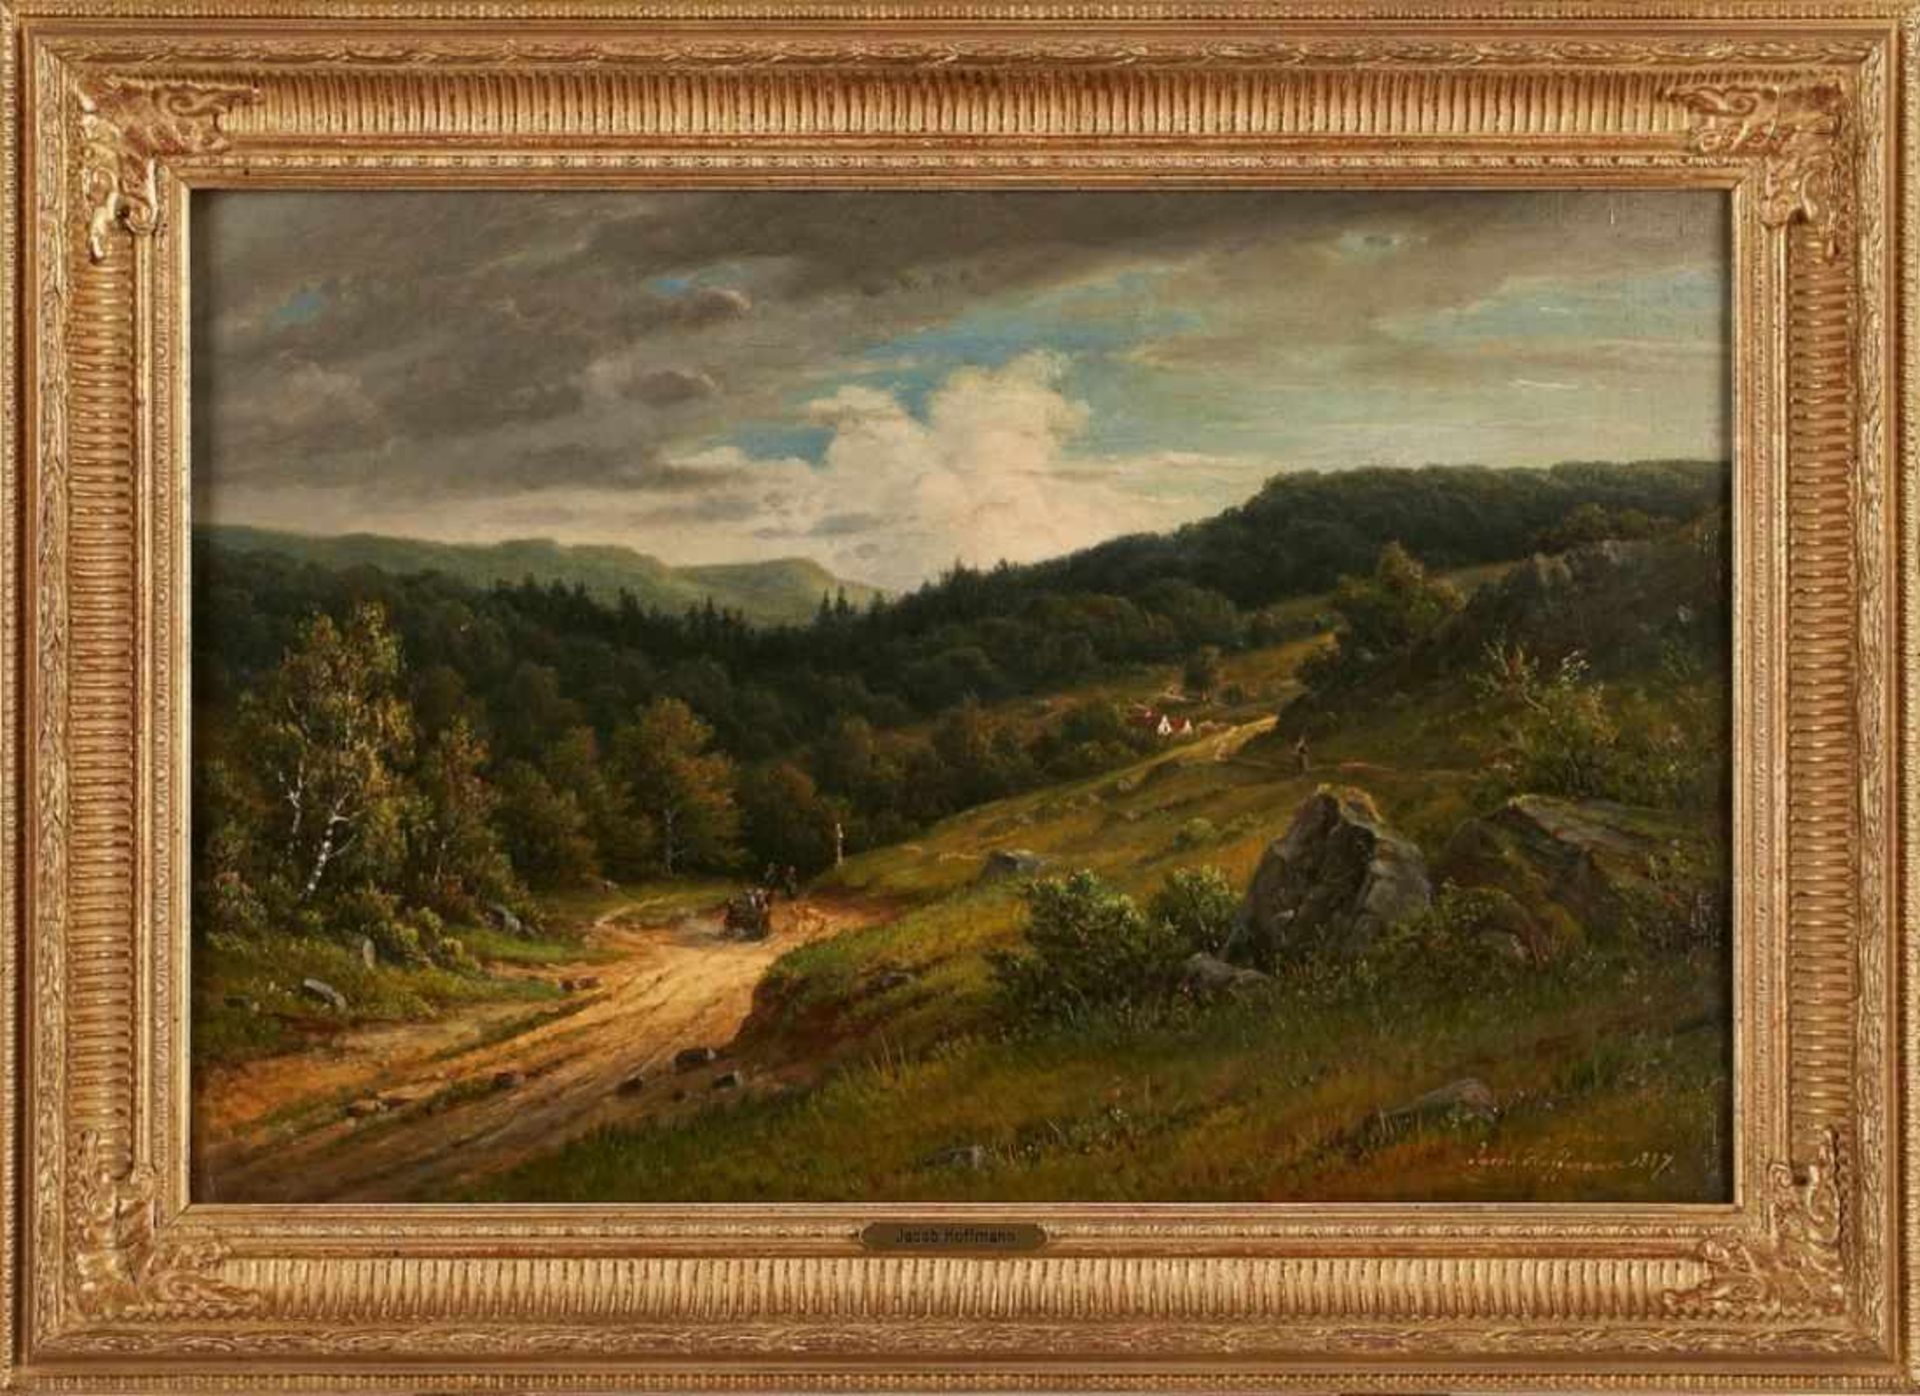 Gemälde Jacob Hoffmann 1851 Frankfurt - 1903 Oberursel "Taunuslandschaft" u. re. sign. u. dat. Jacob